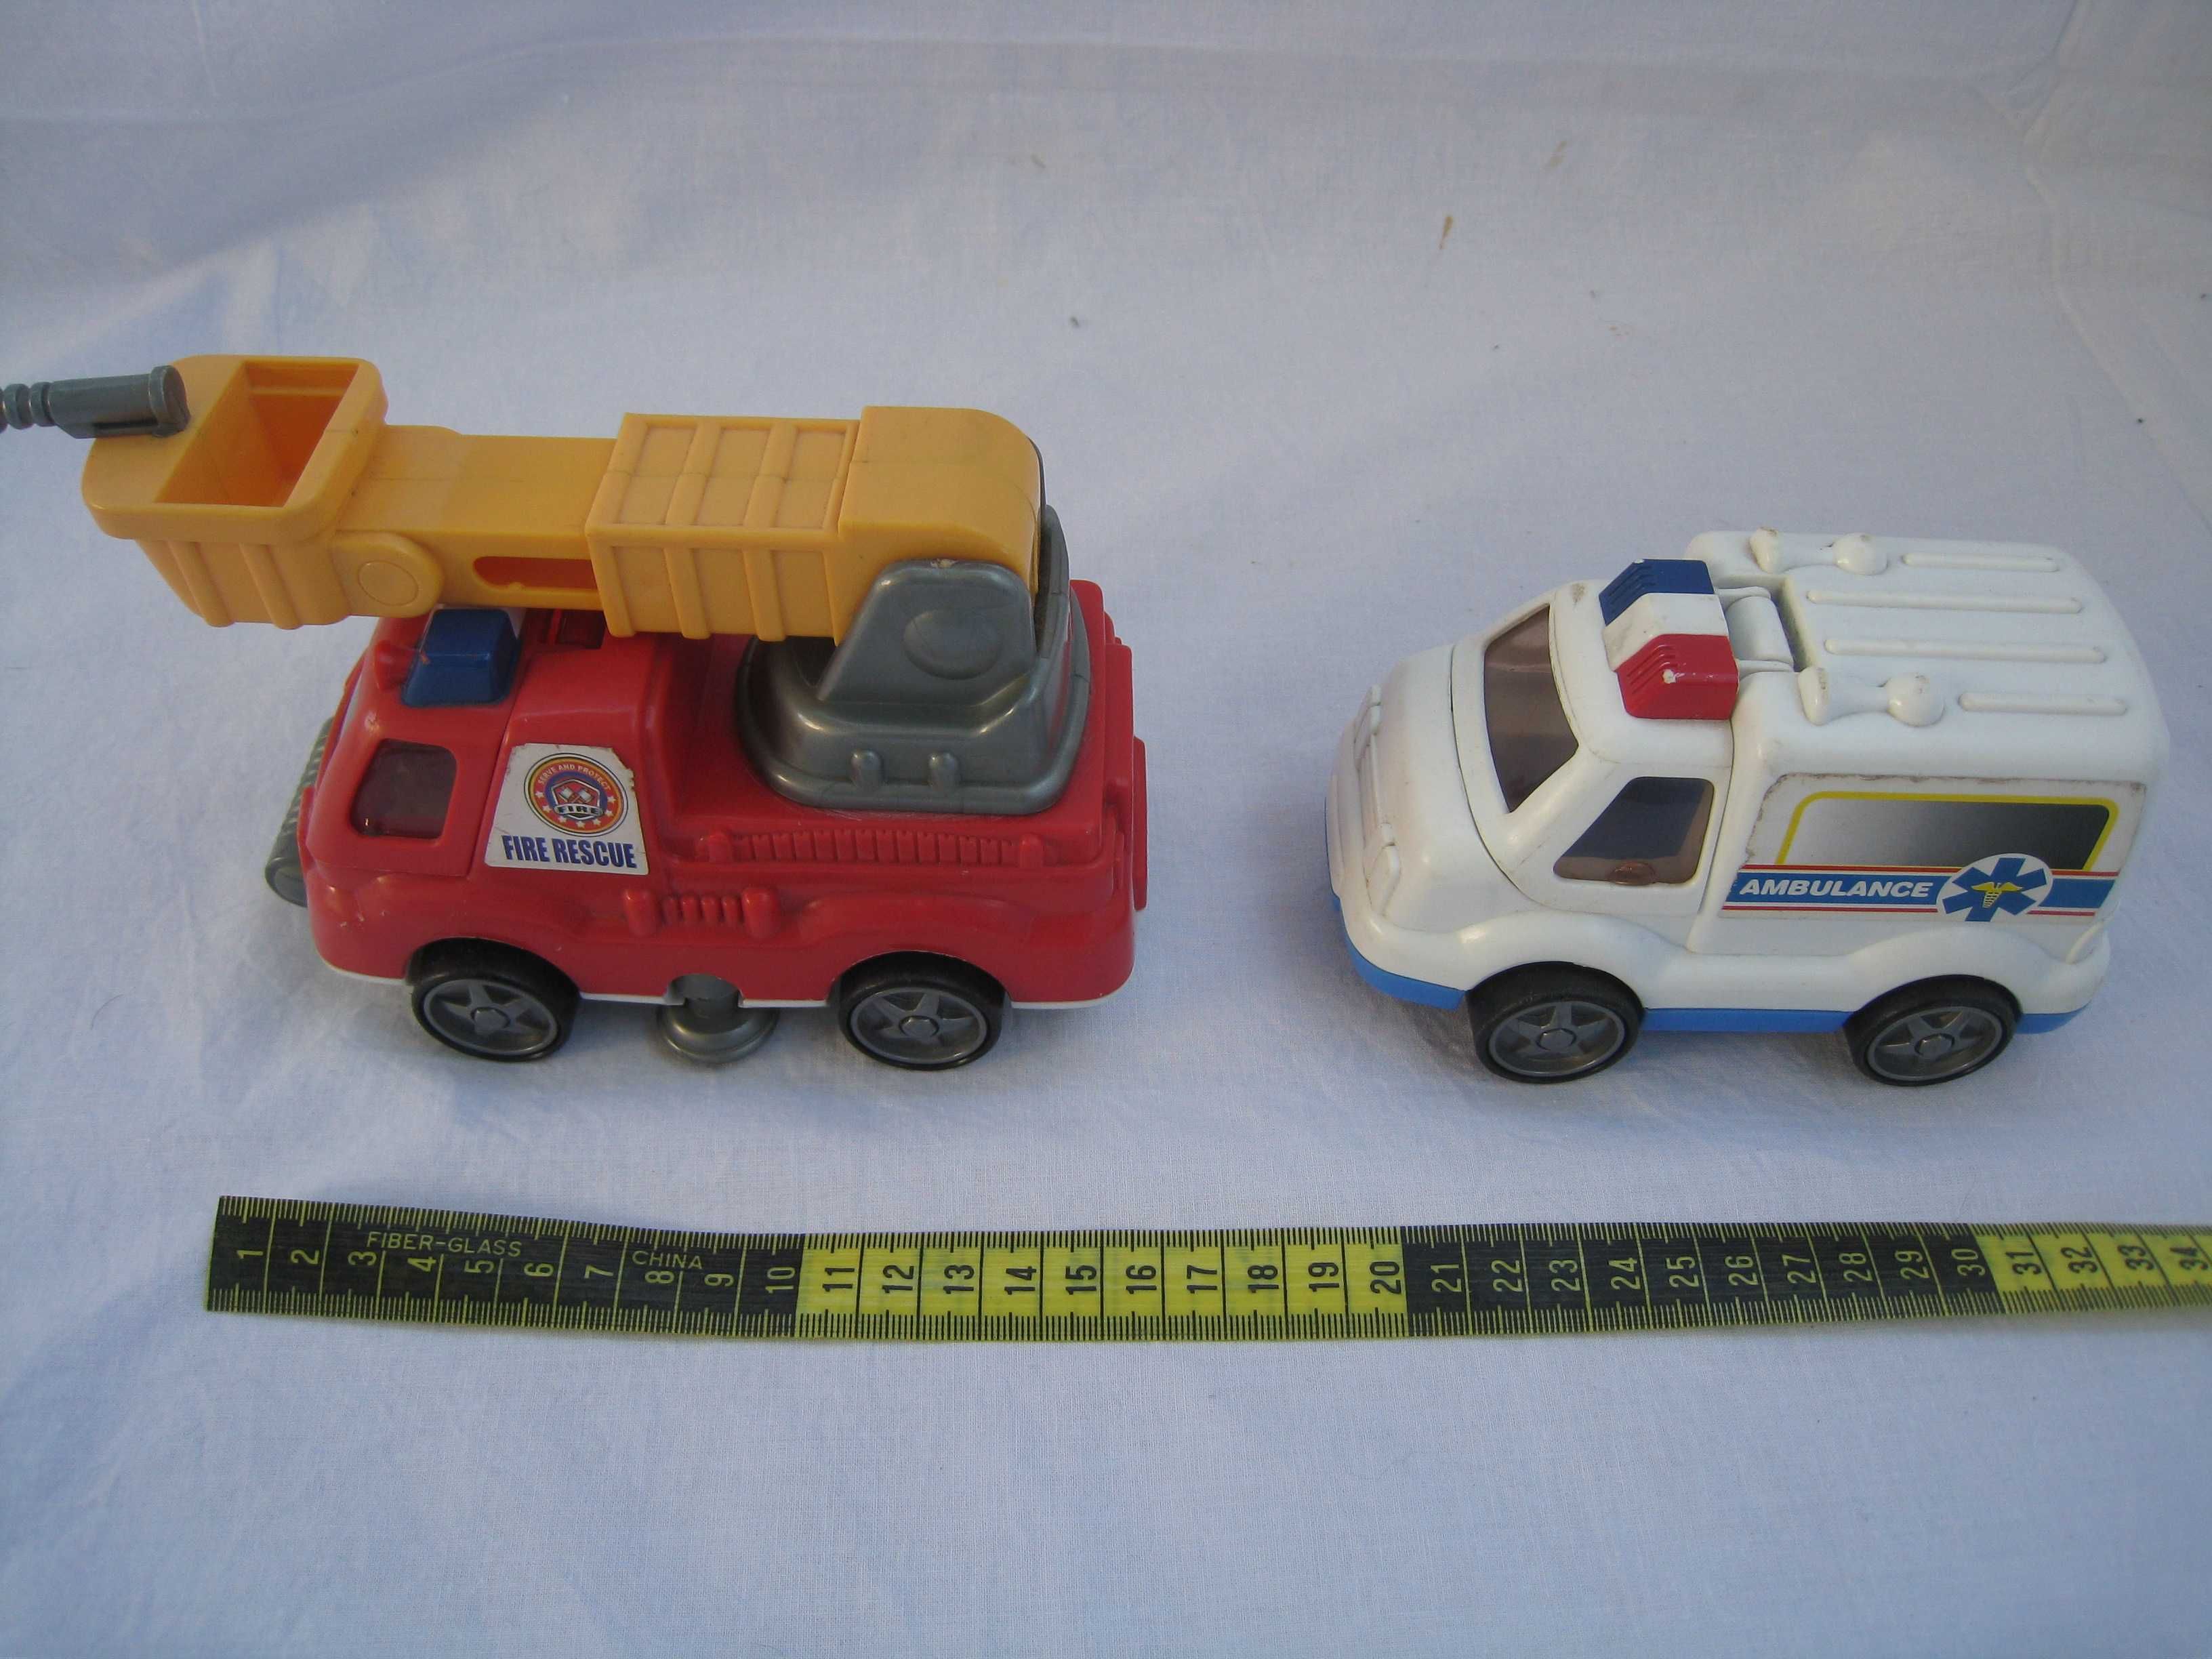 2 Carros de brincar (Ambulância e Bombeiros)